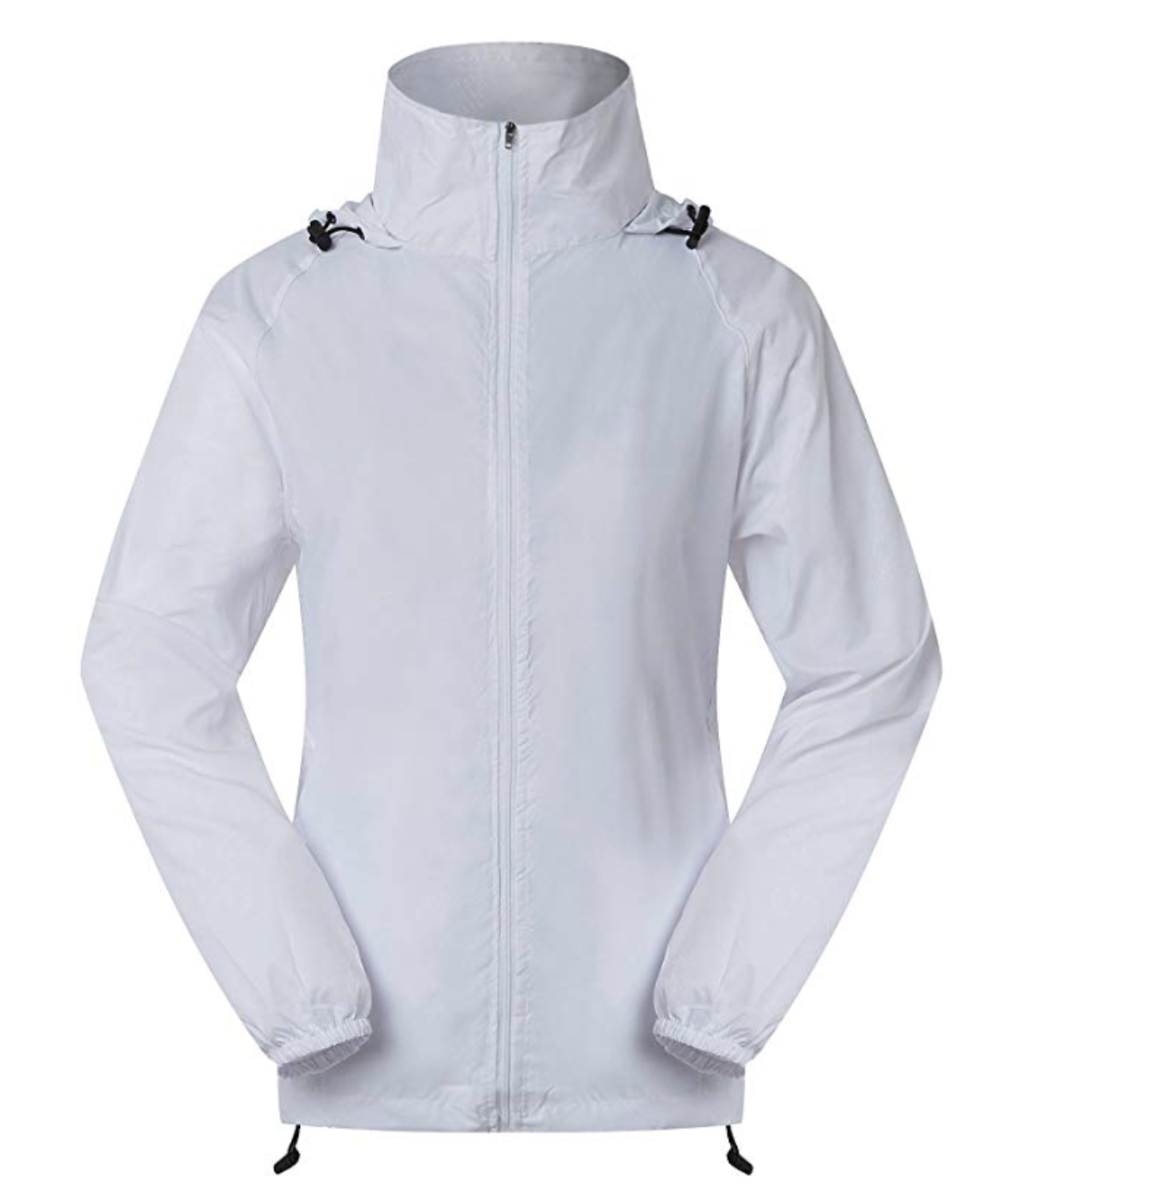 Cheering Women's Lightweight Jackets for Women Waterproof Windbreaker Jacket Super Quick Dry UV Protect Running Coat